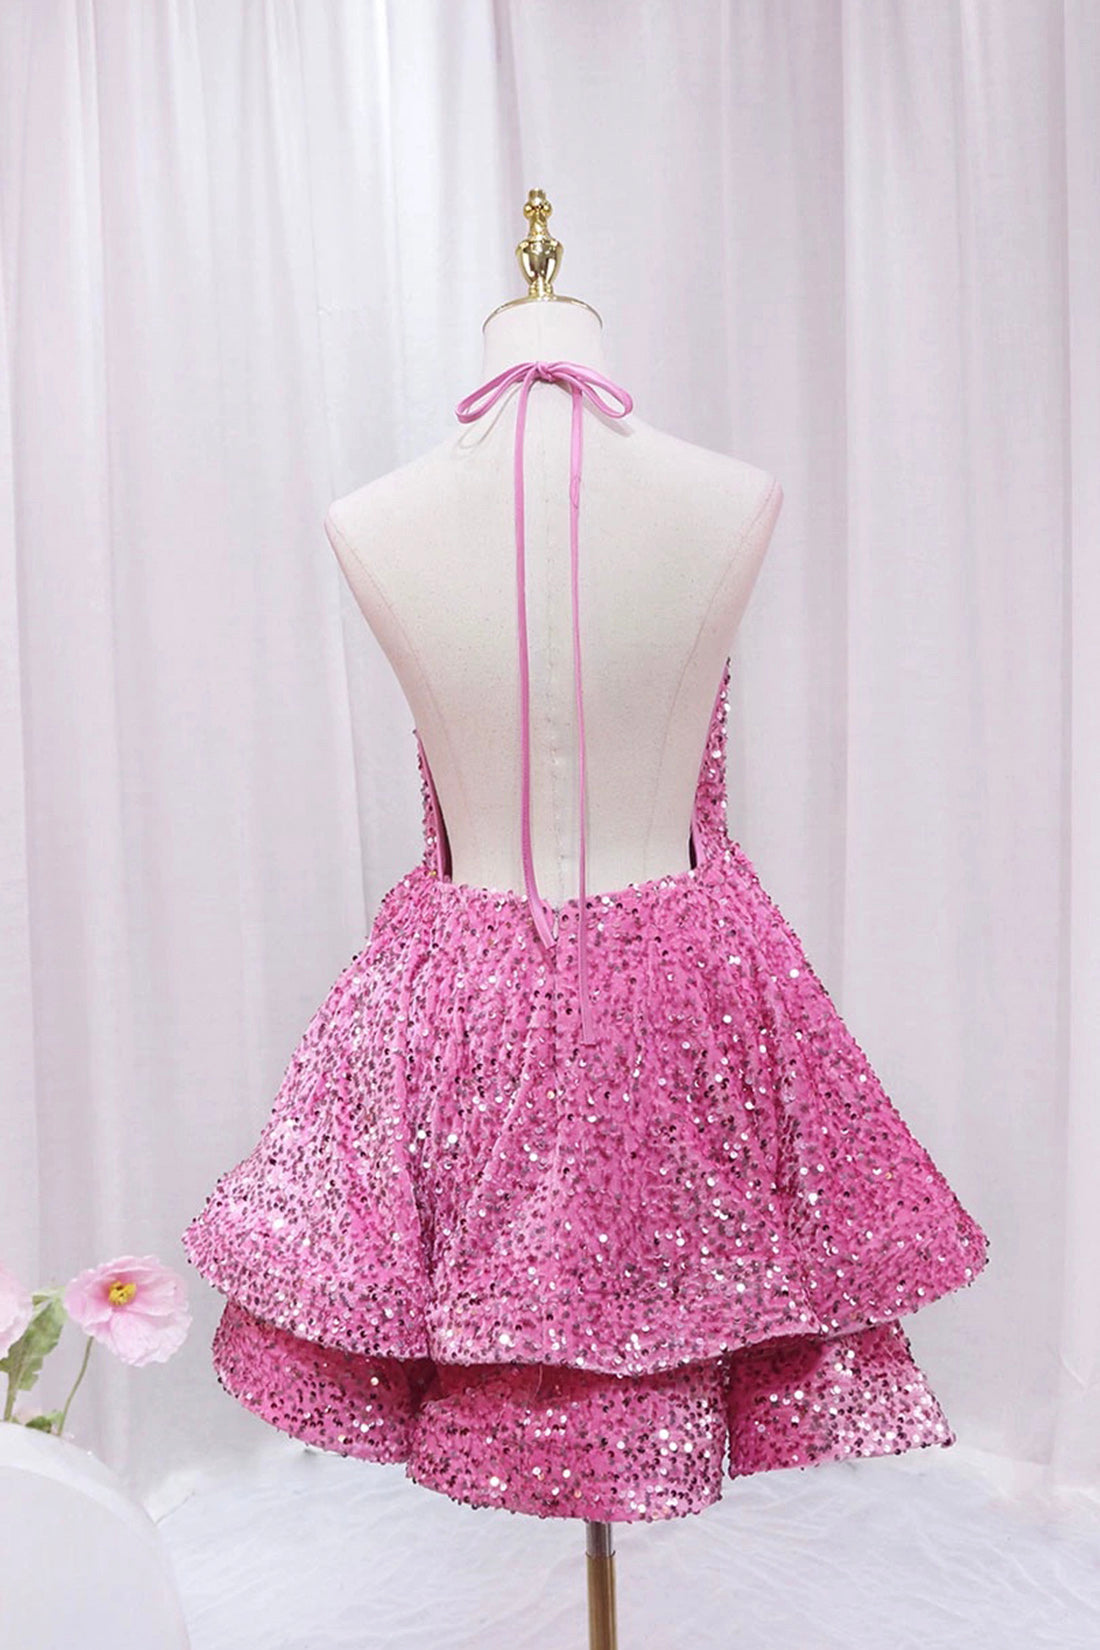 Prom Dress Backless, Pink V-Neck Sequins Short Prom Dress, Pink A-Line Backless Party Dress